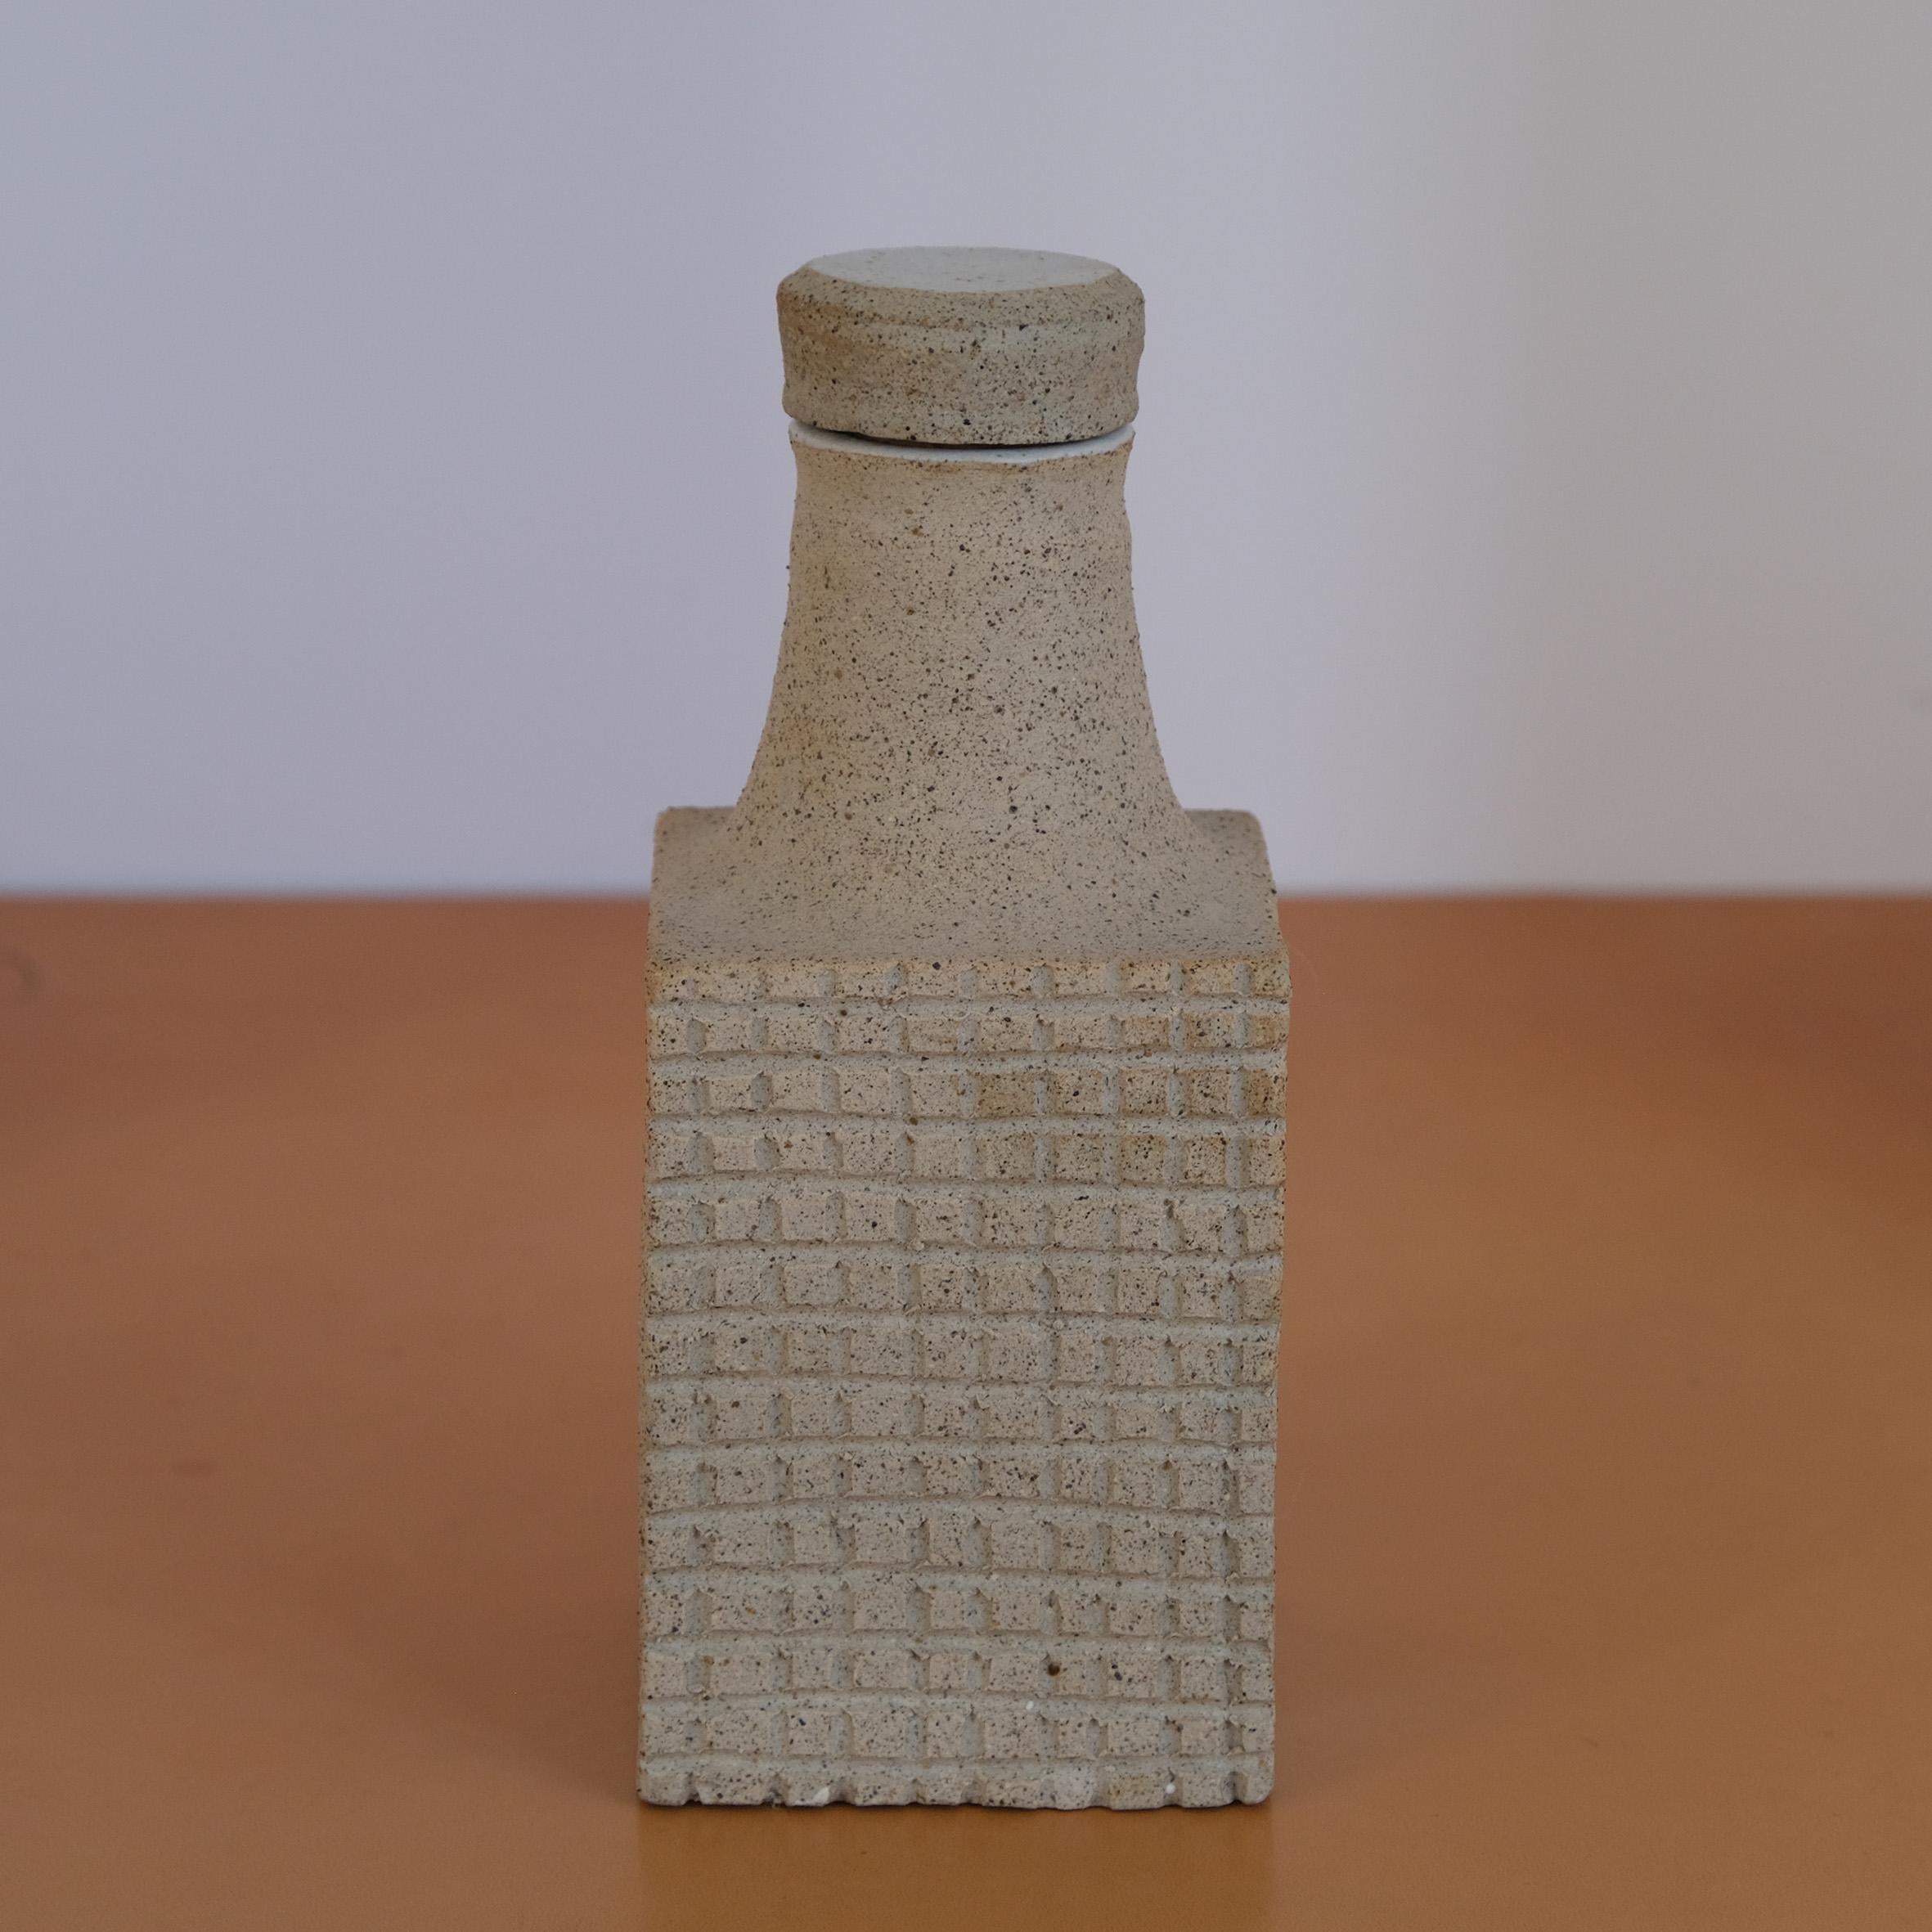 Bruno Gambone (1936-2021)

Flasche

Eine hellgraue Keramikflasche mit einem rechteckigen Körper, der auf der Vorder- und Rückseite mit einem Flachreliefgitter verziert ist. Der trompetenförmige Flaschenhals ist mit einer passenden Keramikkappe